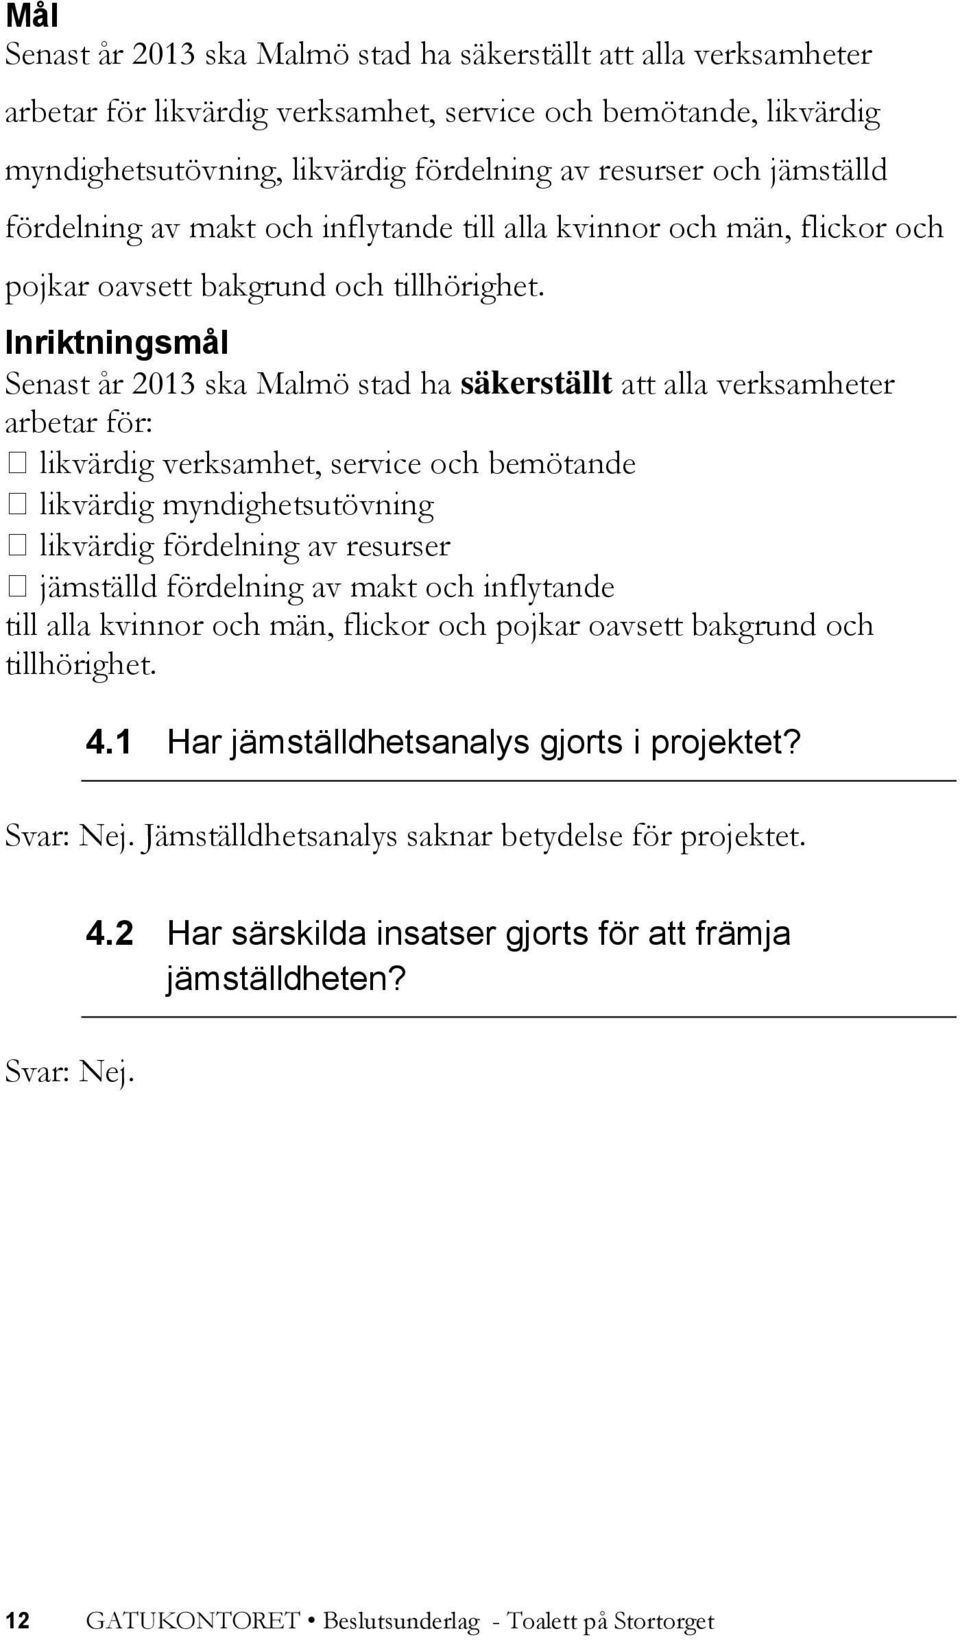 Inriktningsmål Senast år 2013 ska Malmö stad ha säkerställt att alla verksamheter arbetar för: likvärdig verksamhet, service och bemötande likvärdig myndighetsutövning likvärdig fördelning av